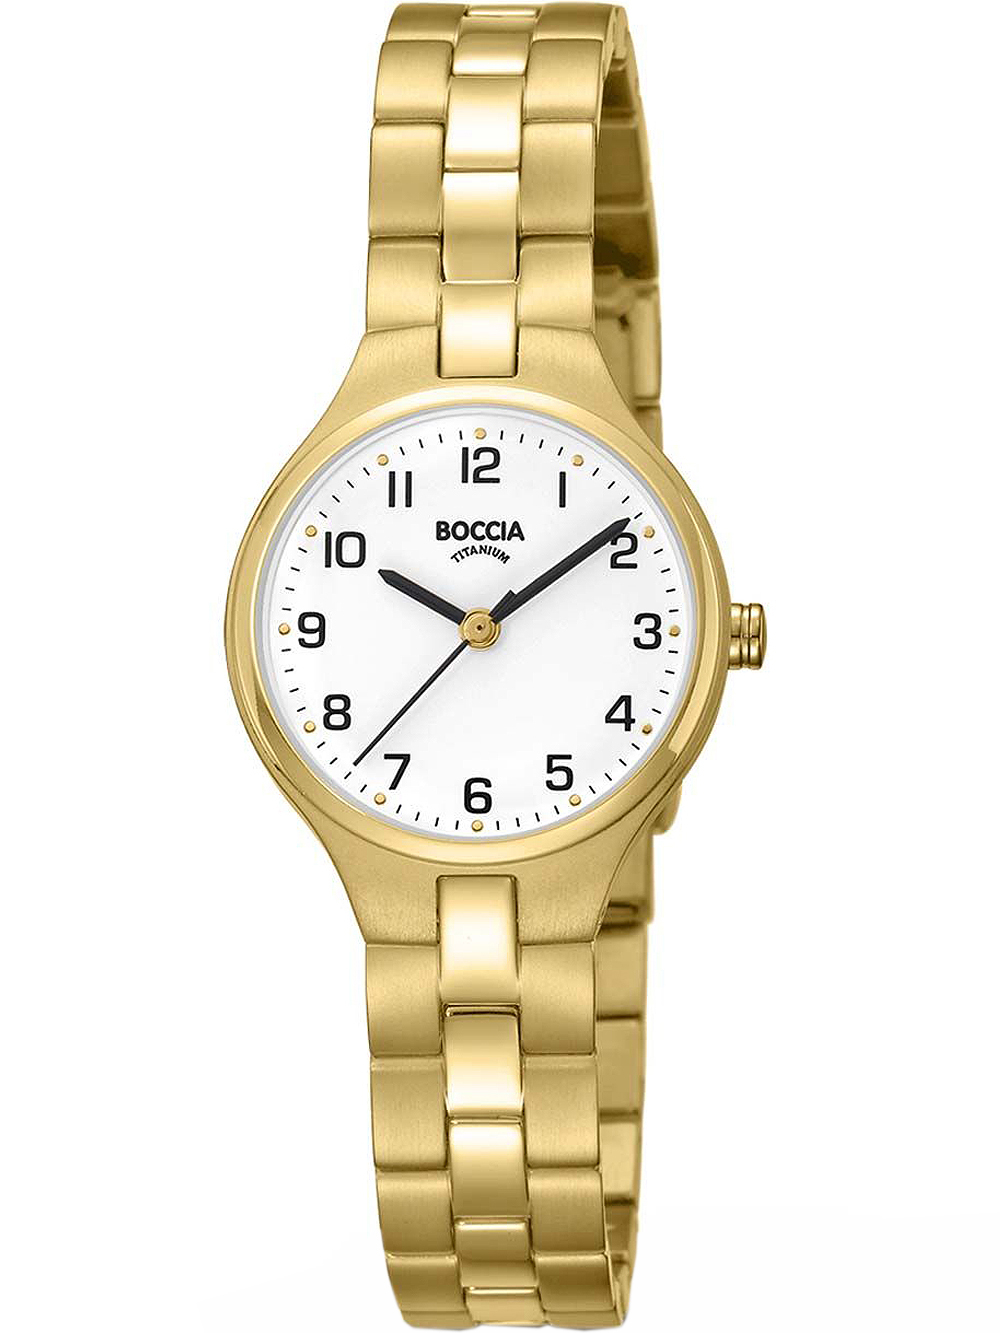 Dámské hodinky Boccia 3330-03 Ladies Watch Titanium 26mm 3ATM